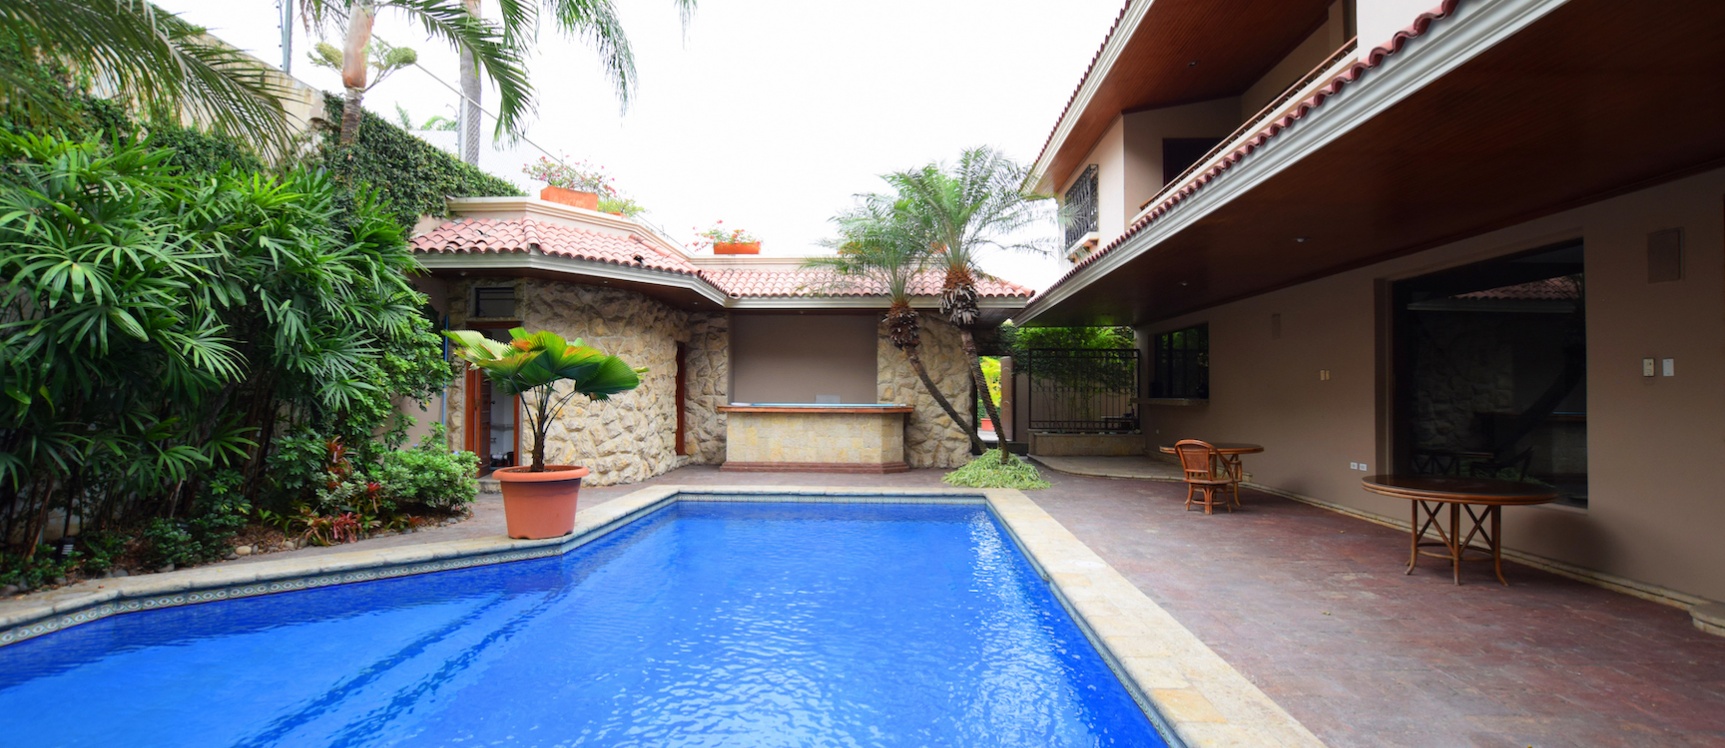 GeoBienes - Casa en alquiler ubicada en Olivos I, Ceibos, Norte de Guayaquil - Plusvalia Guayaquil Casas de venta y alquiler Inmobiliaria Ecuador